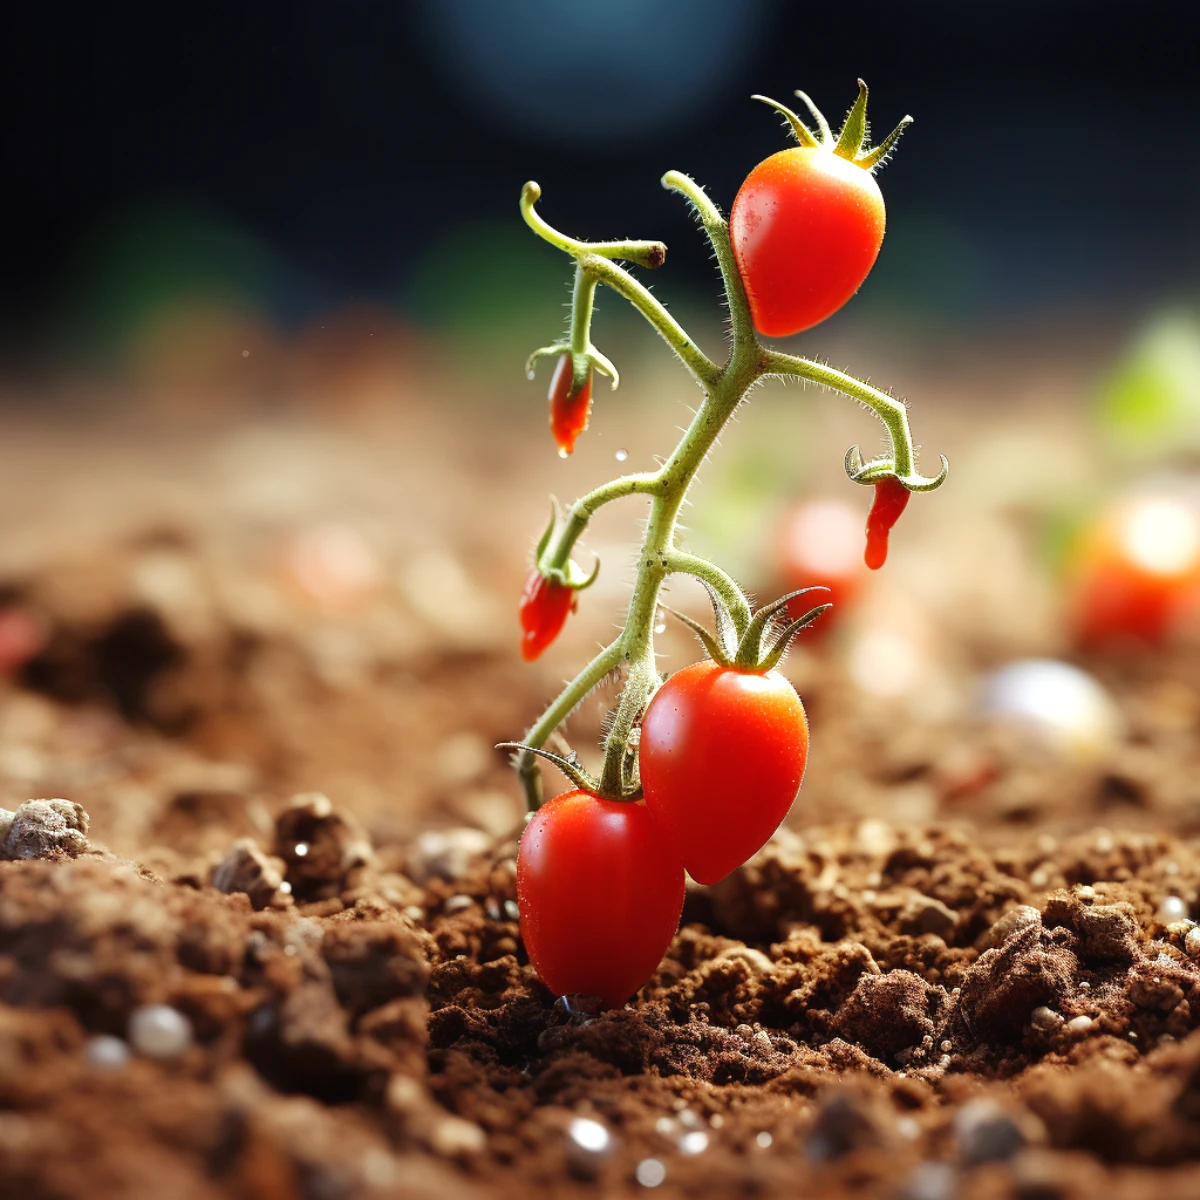 comment faire germer des graines de tomates fruits rouges feuilles vertes